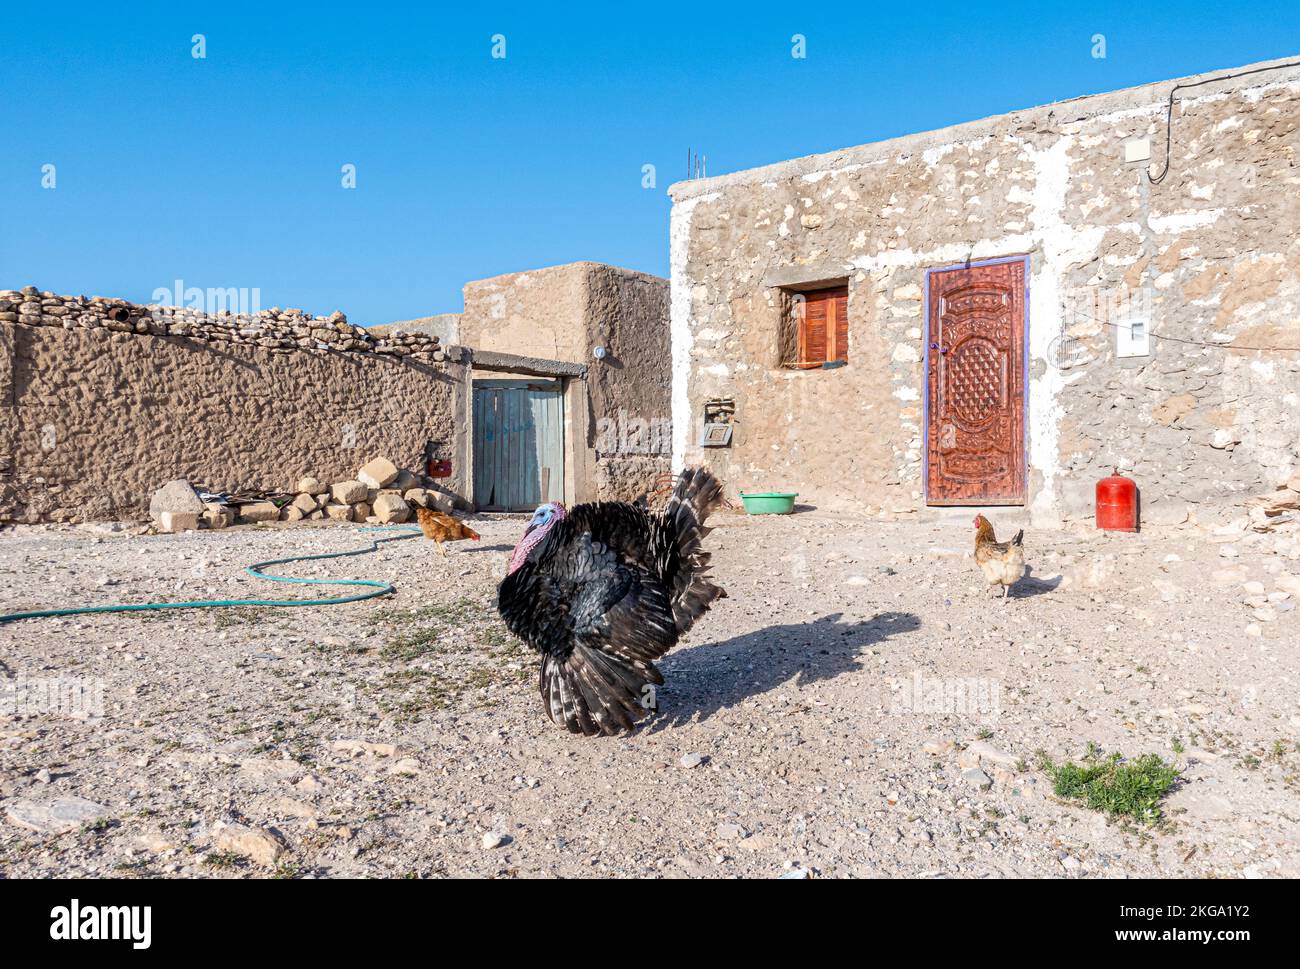 Cour dans la maison berbère du désert. Dinde, poulet, tuyau d'eau. Maroc Banque D'Images